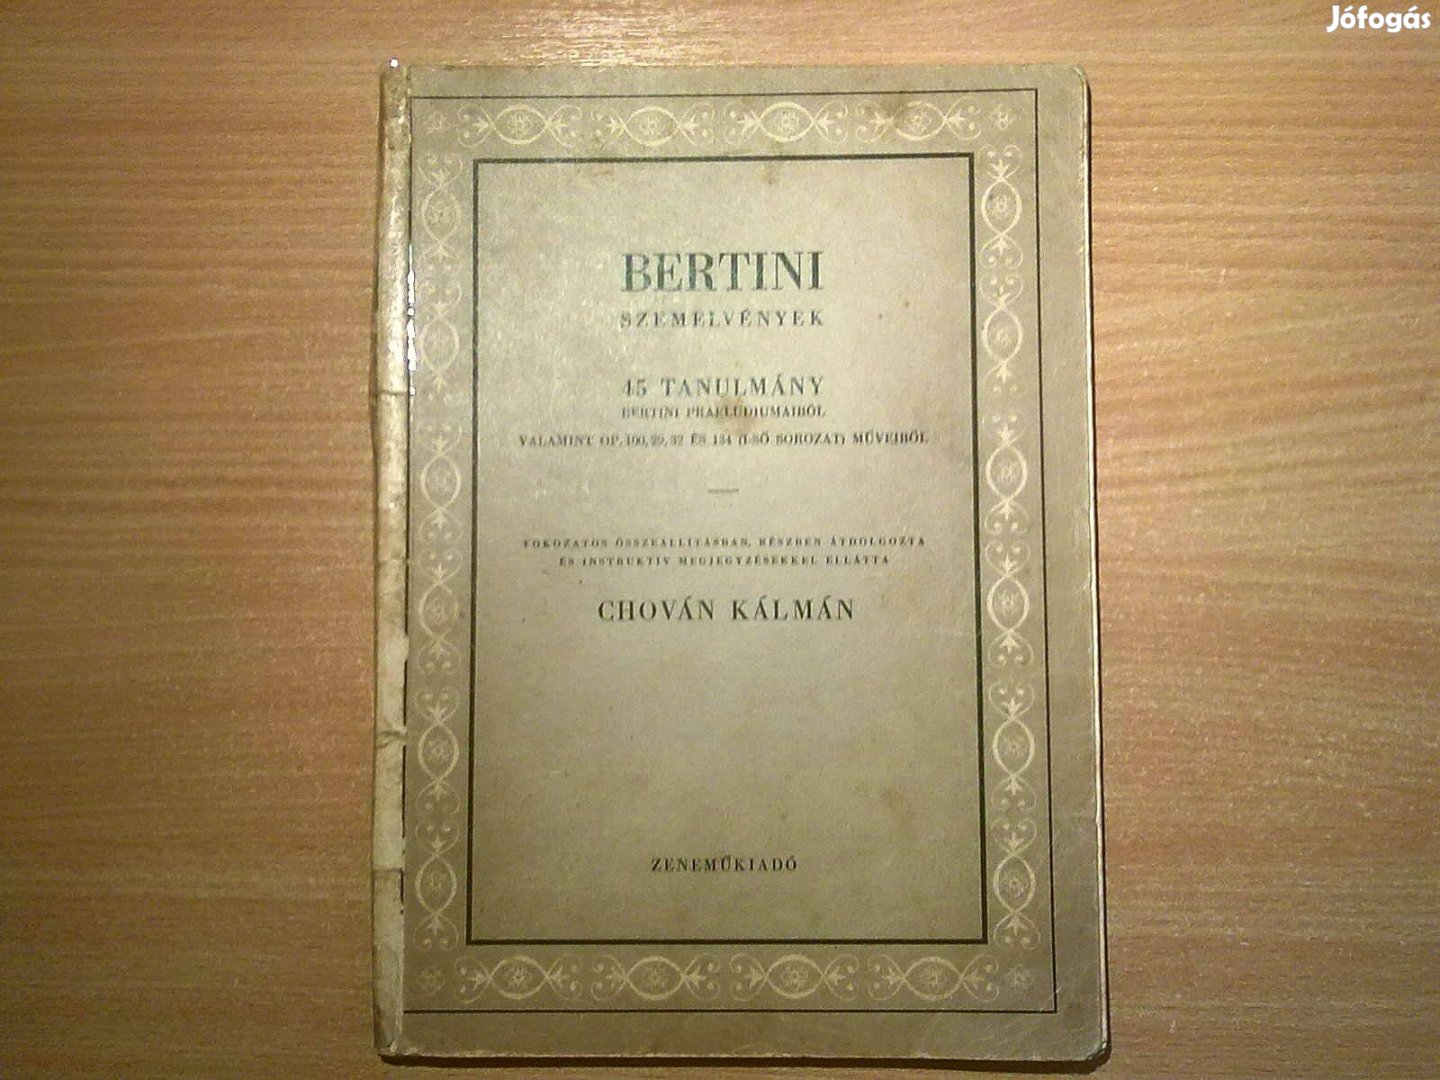 Bertini szemelvények - 45 tanulmány Bertini praeludiumából (1958)